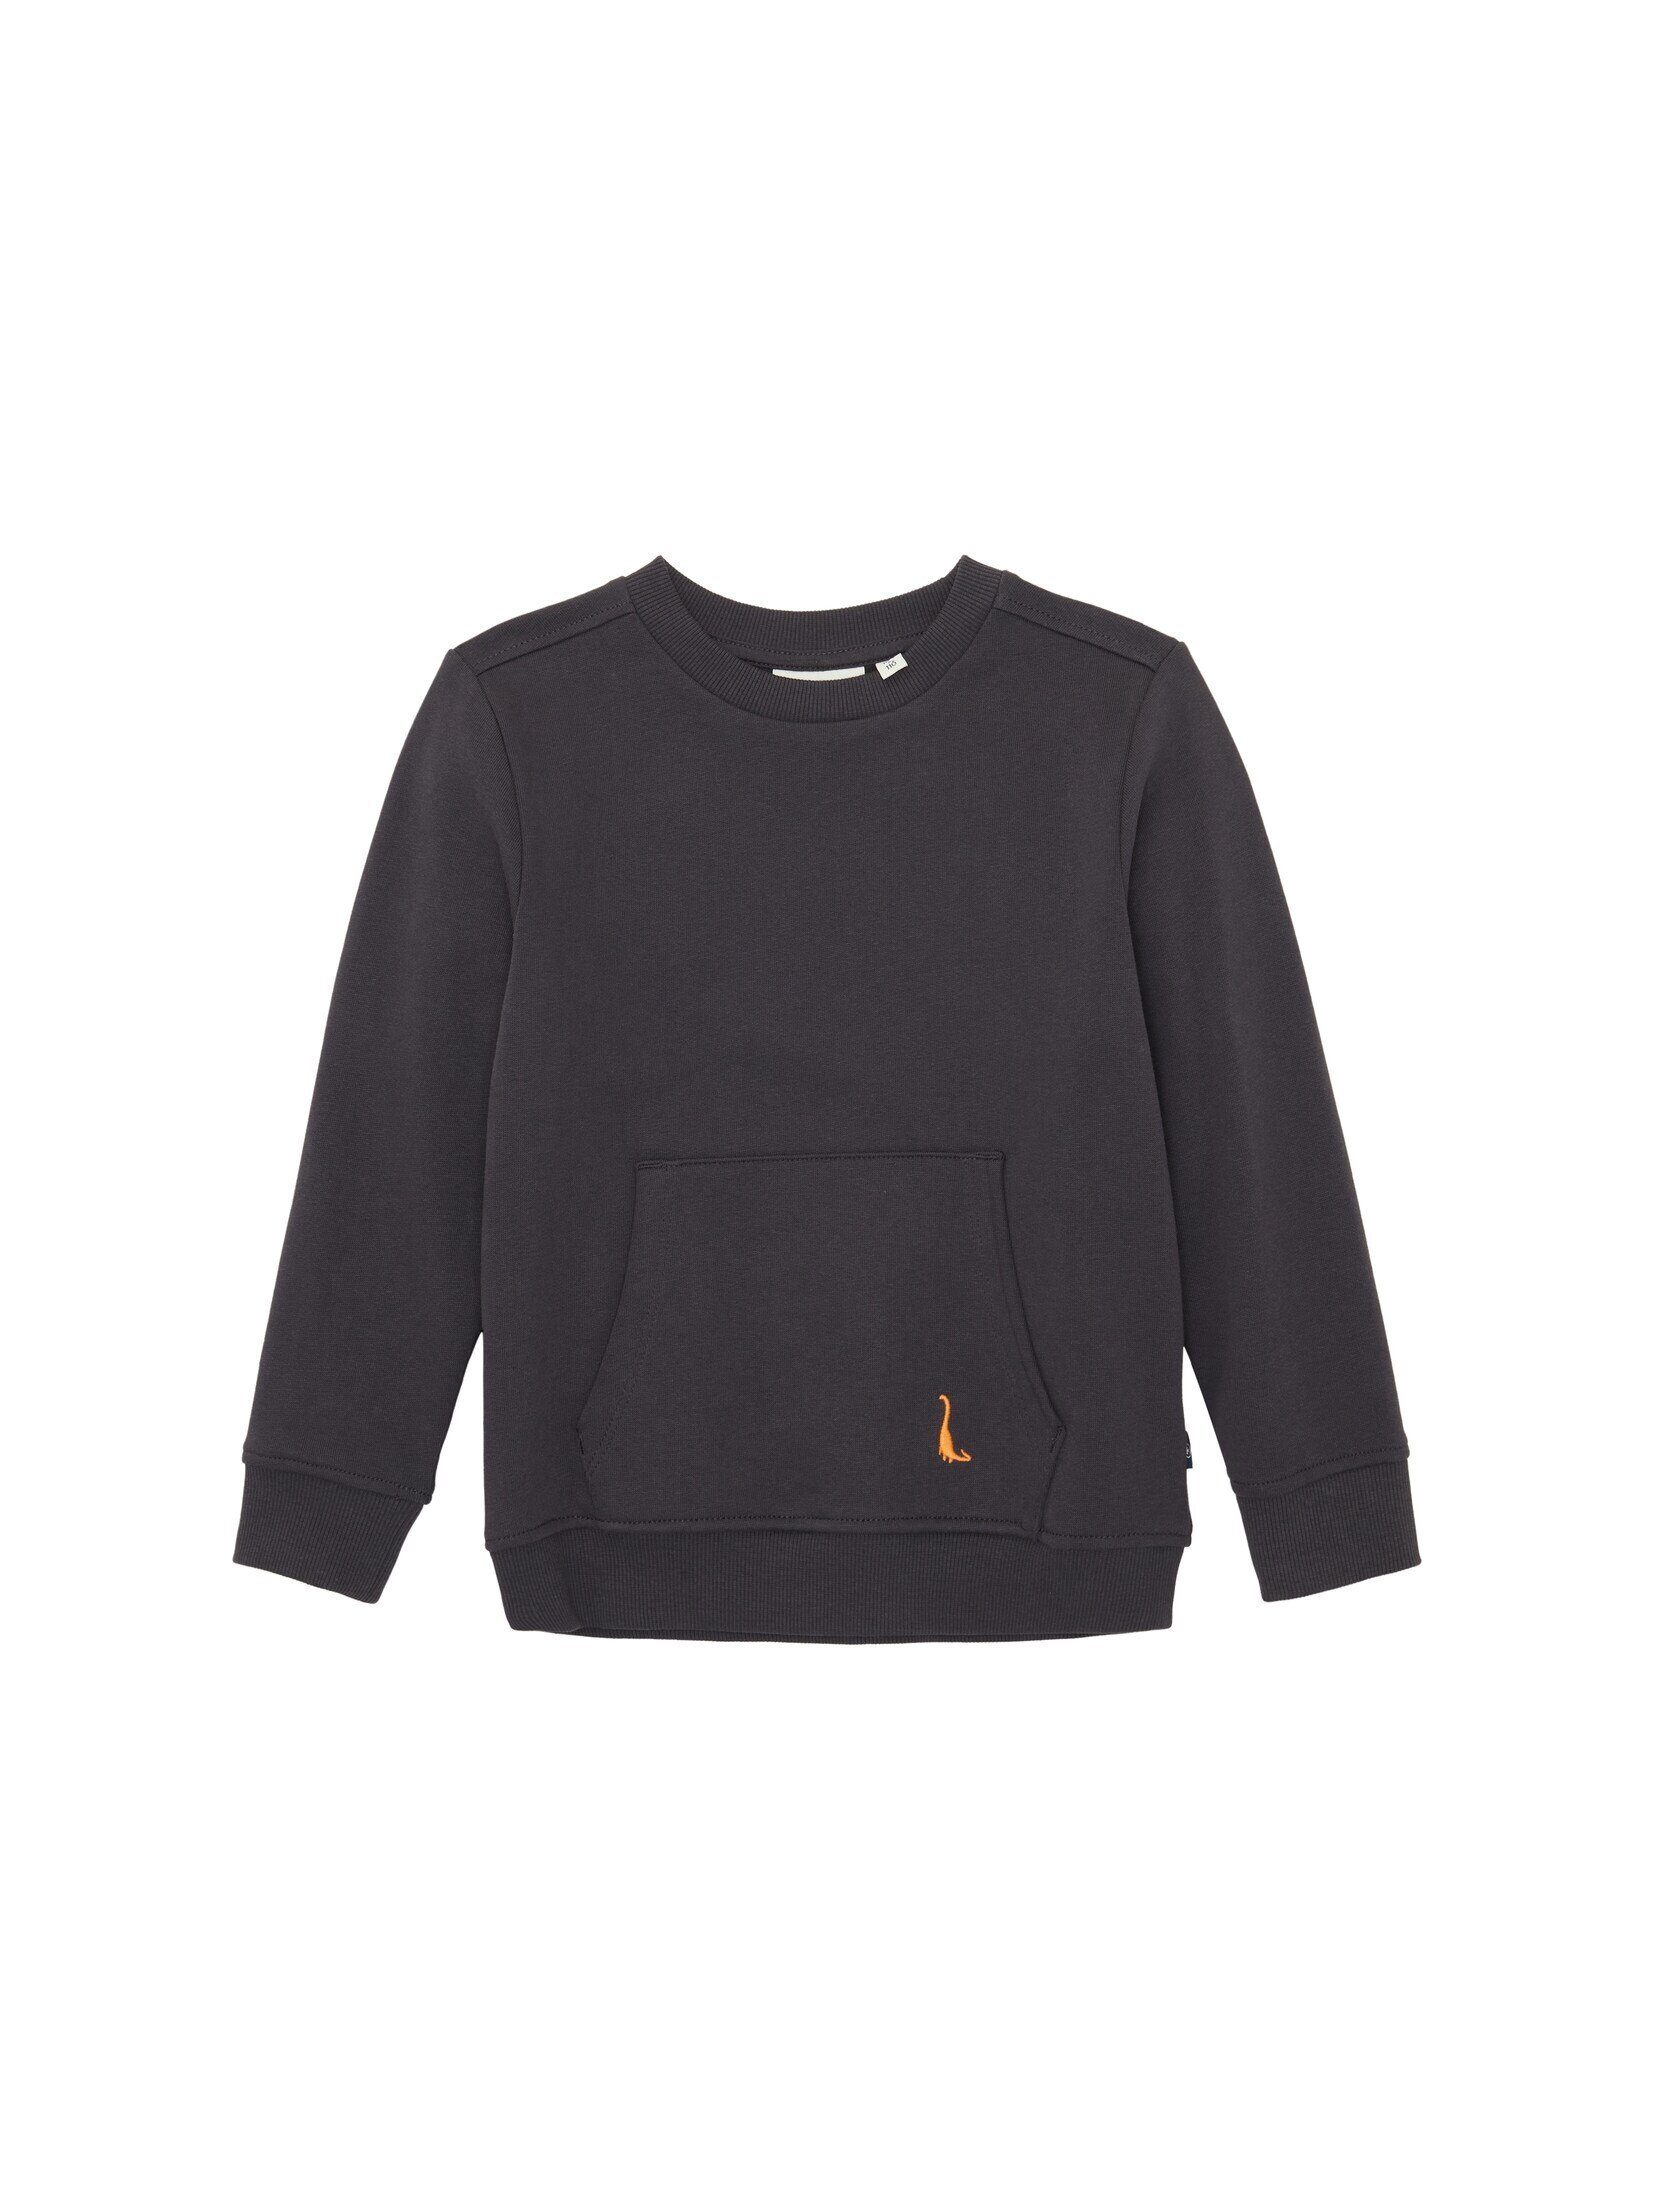 TOM TAILOR Sweatshirt Sweatshirt mit Kängurutasche coal grey